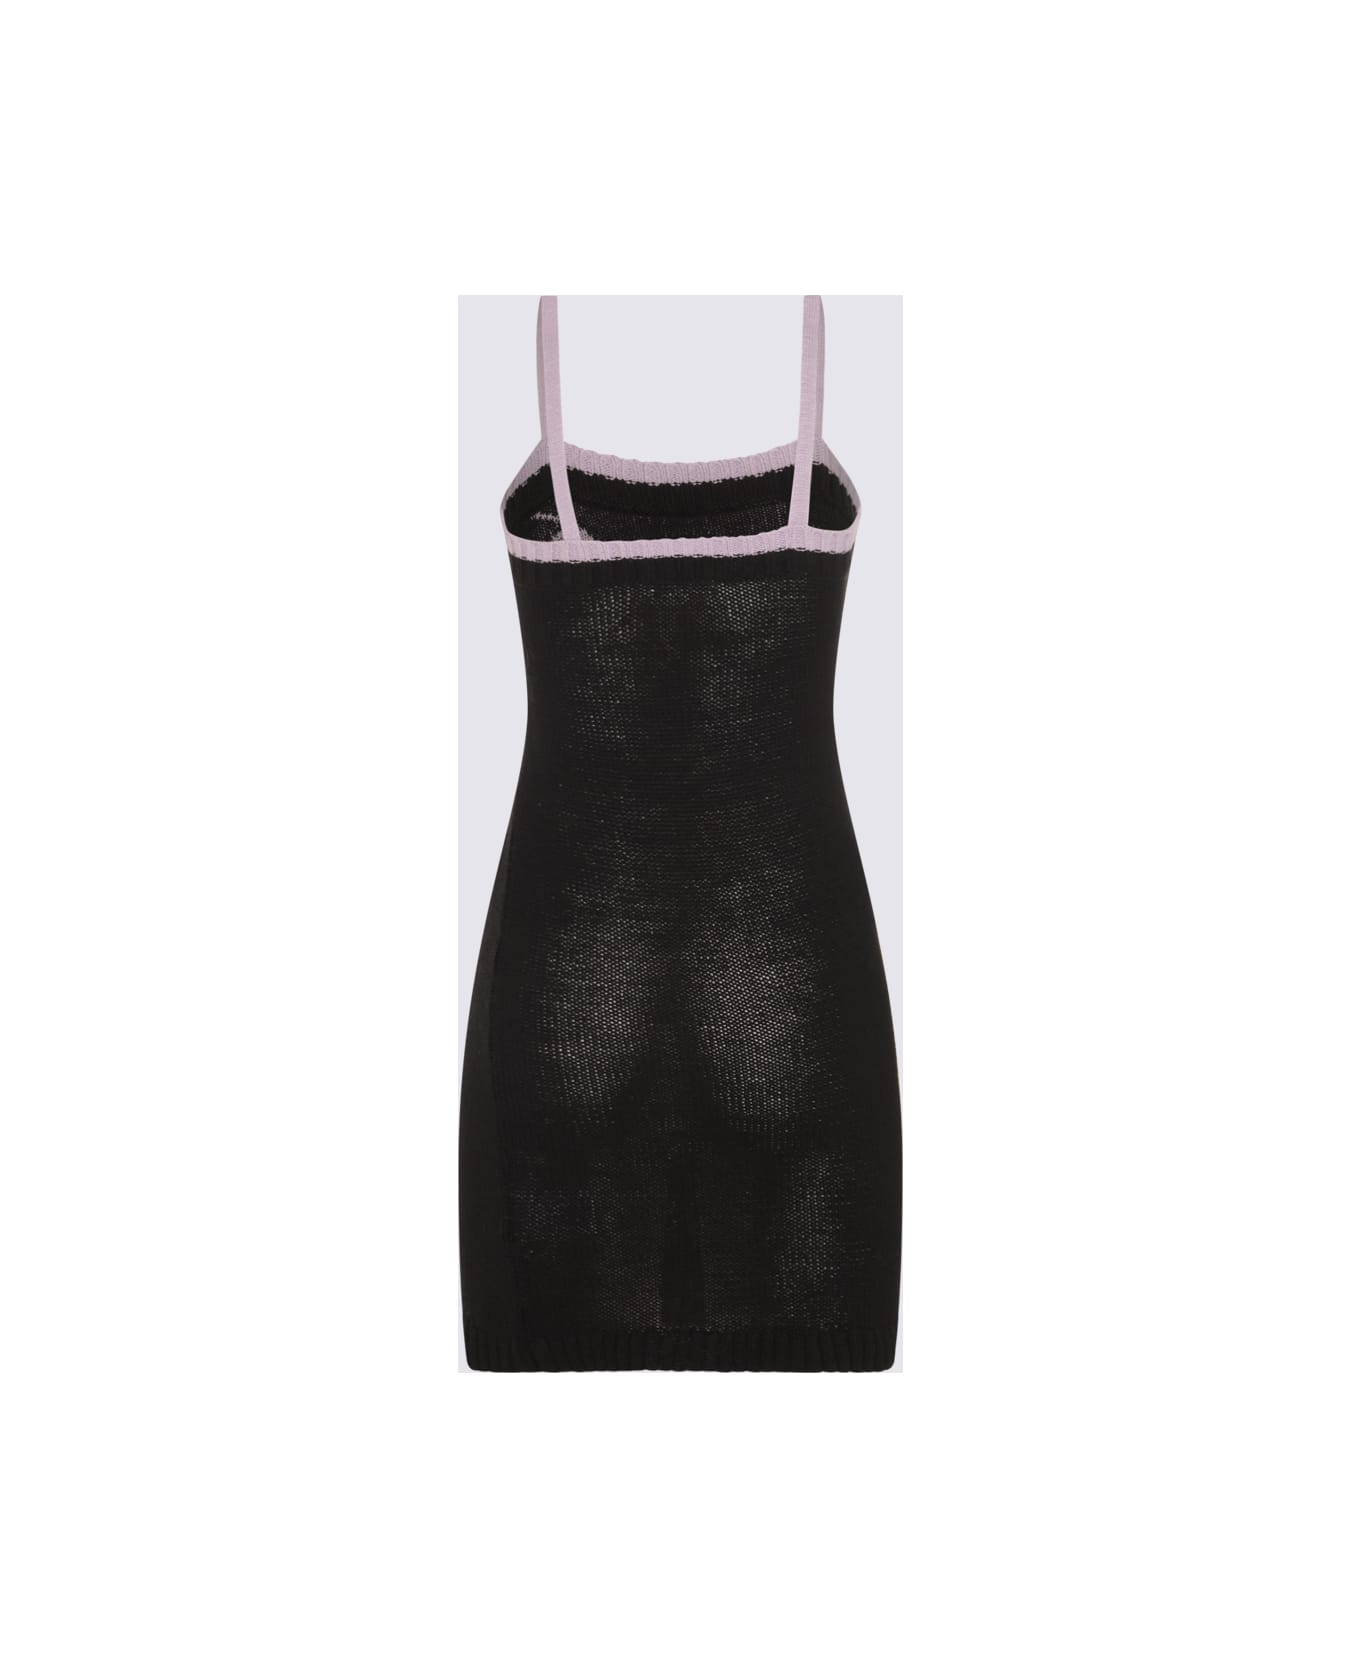 (di)vision Black Linen And Cotton Mini Dress - Black